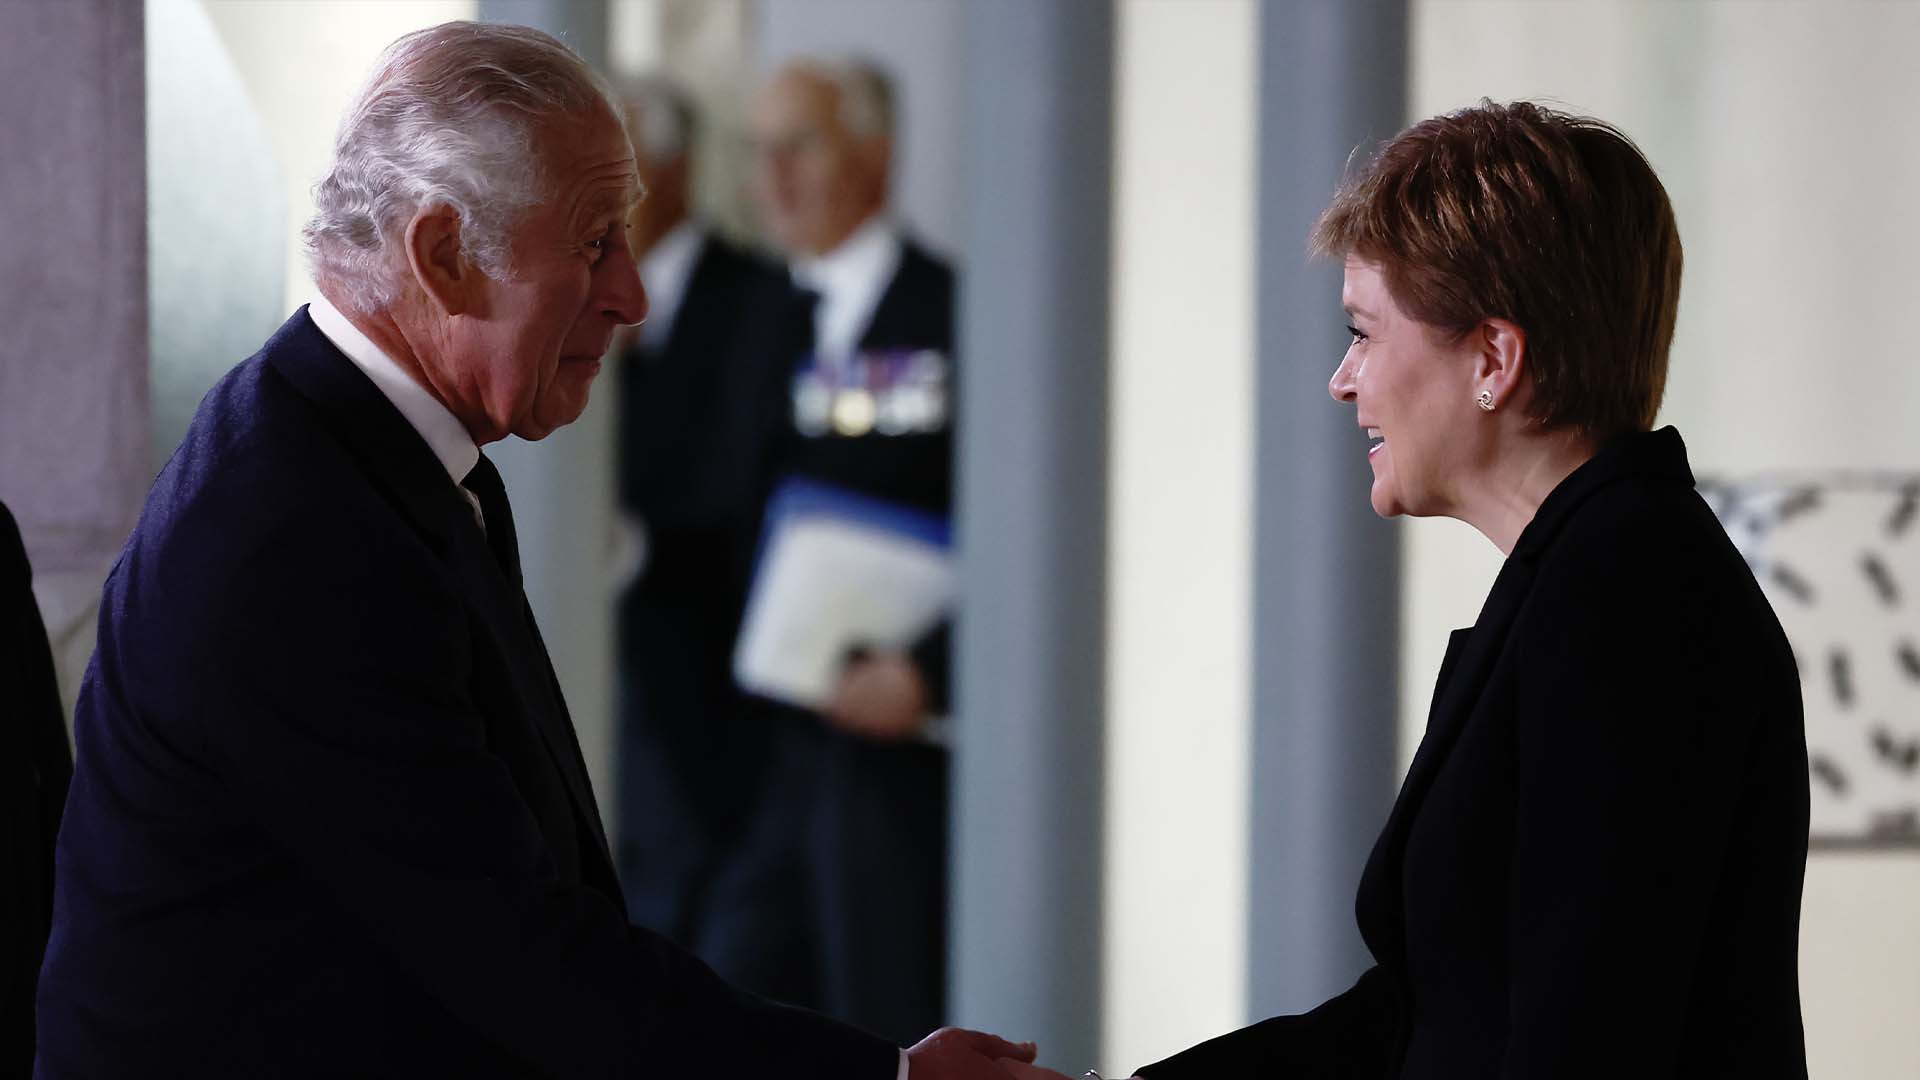 Le roi Charles III est salué par le premier ministre écossais Nicola Sturgeon avant de recevoir une motion de condoléances au Parlement écossais à Holyrood, Édimbourg,  le 12 septembre 2022.